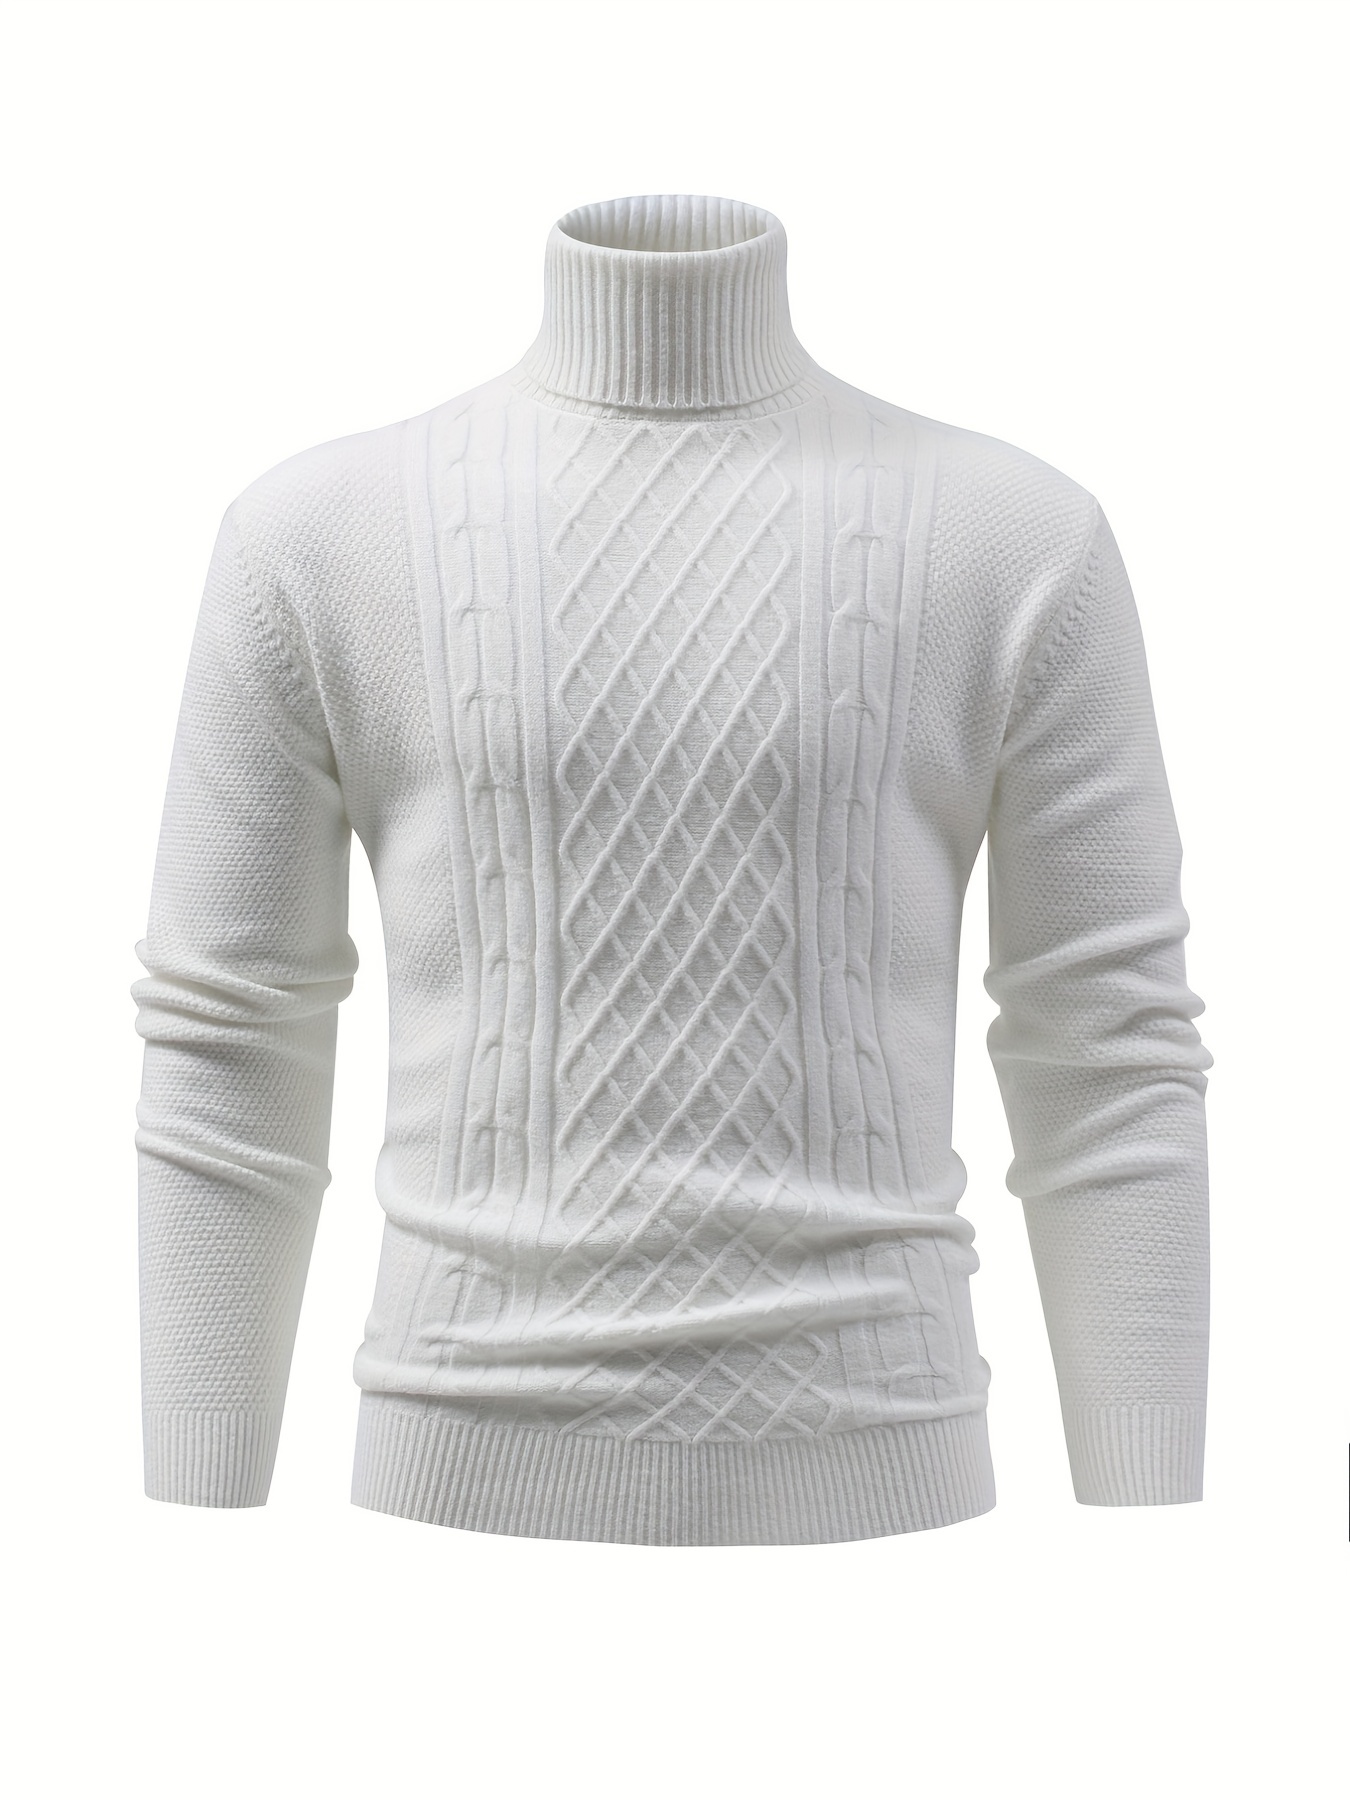 Camiseta elástica de manga larga con cuello alto para mujer, para otoño e  invierno, cálida, básica, sin botones